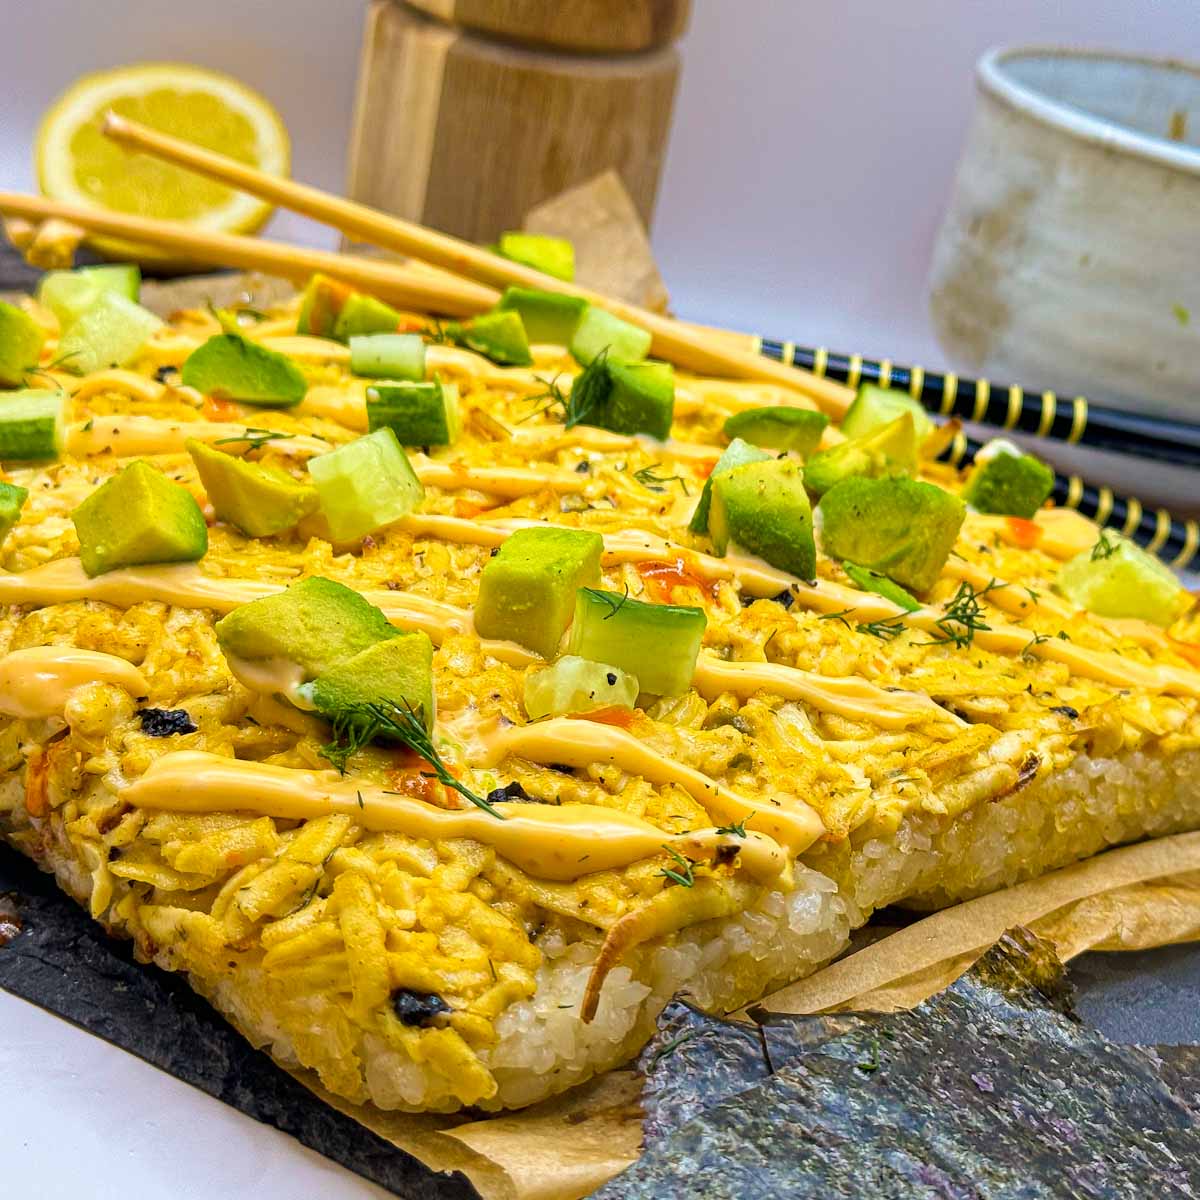 Easy Vegan Sushi Bake with Tofu Crab Topping